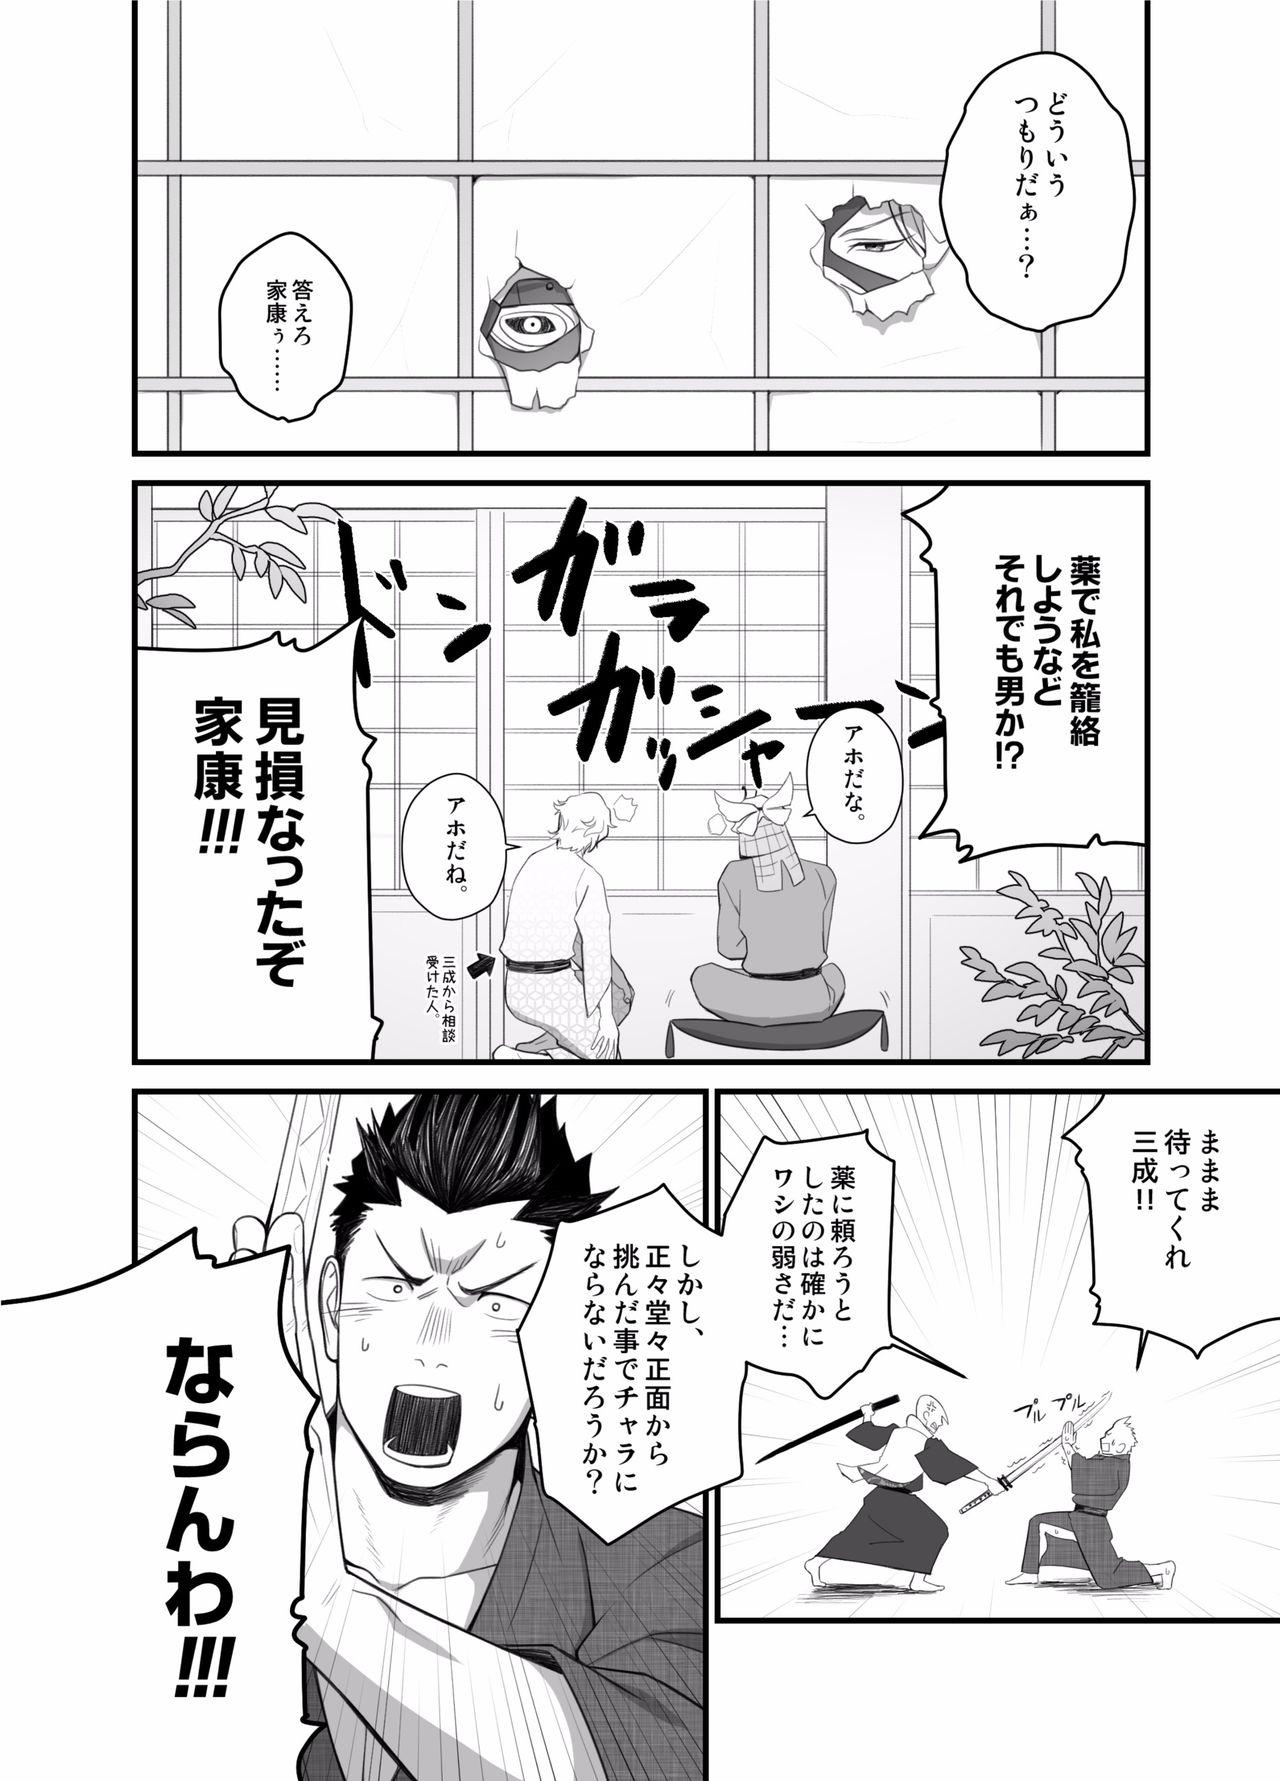 Pantyhose Nichiyu Saki - Sengoku basara Mouth - Page 6